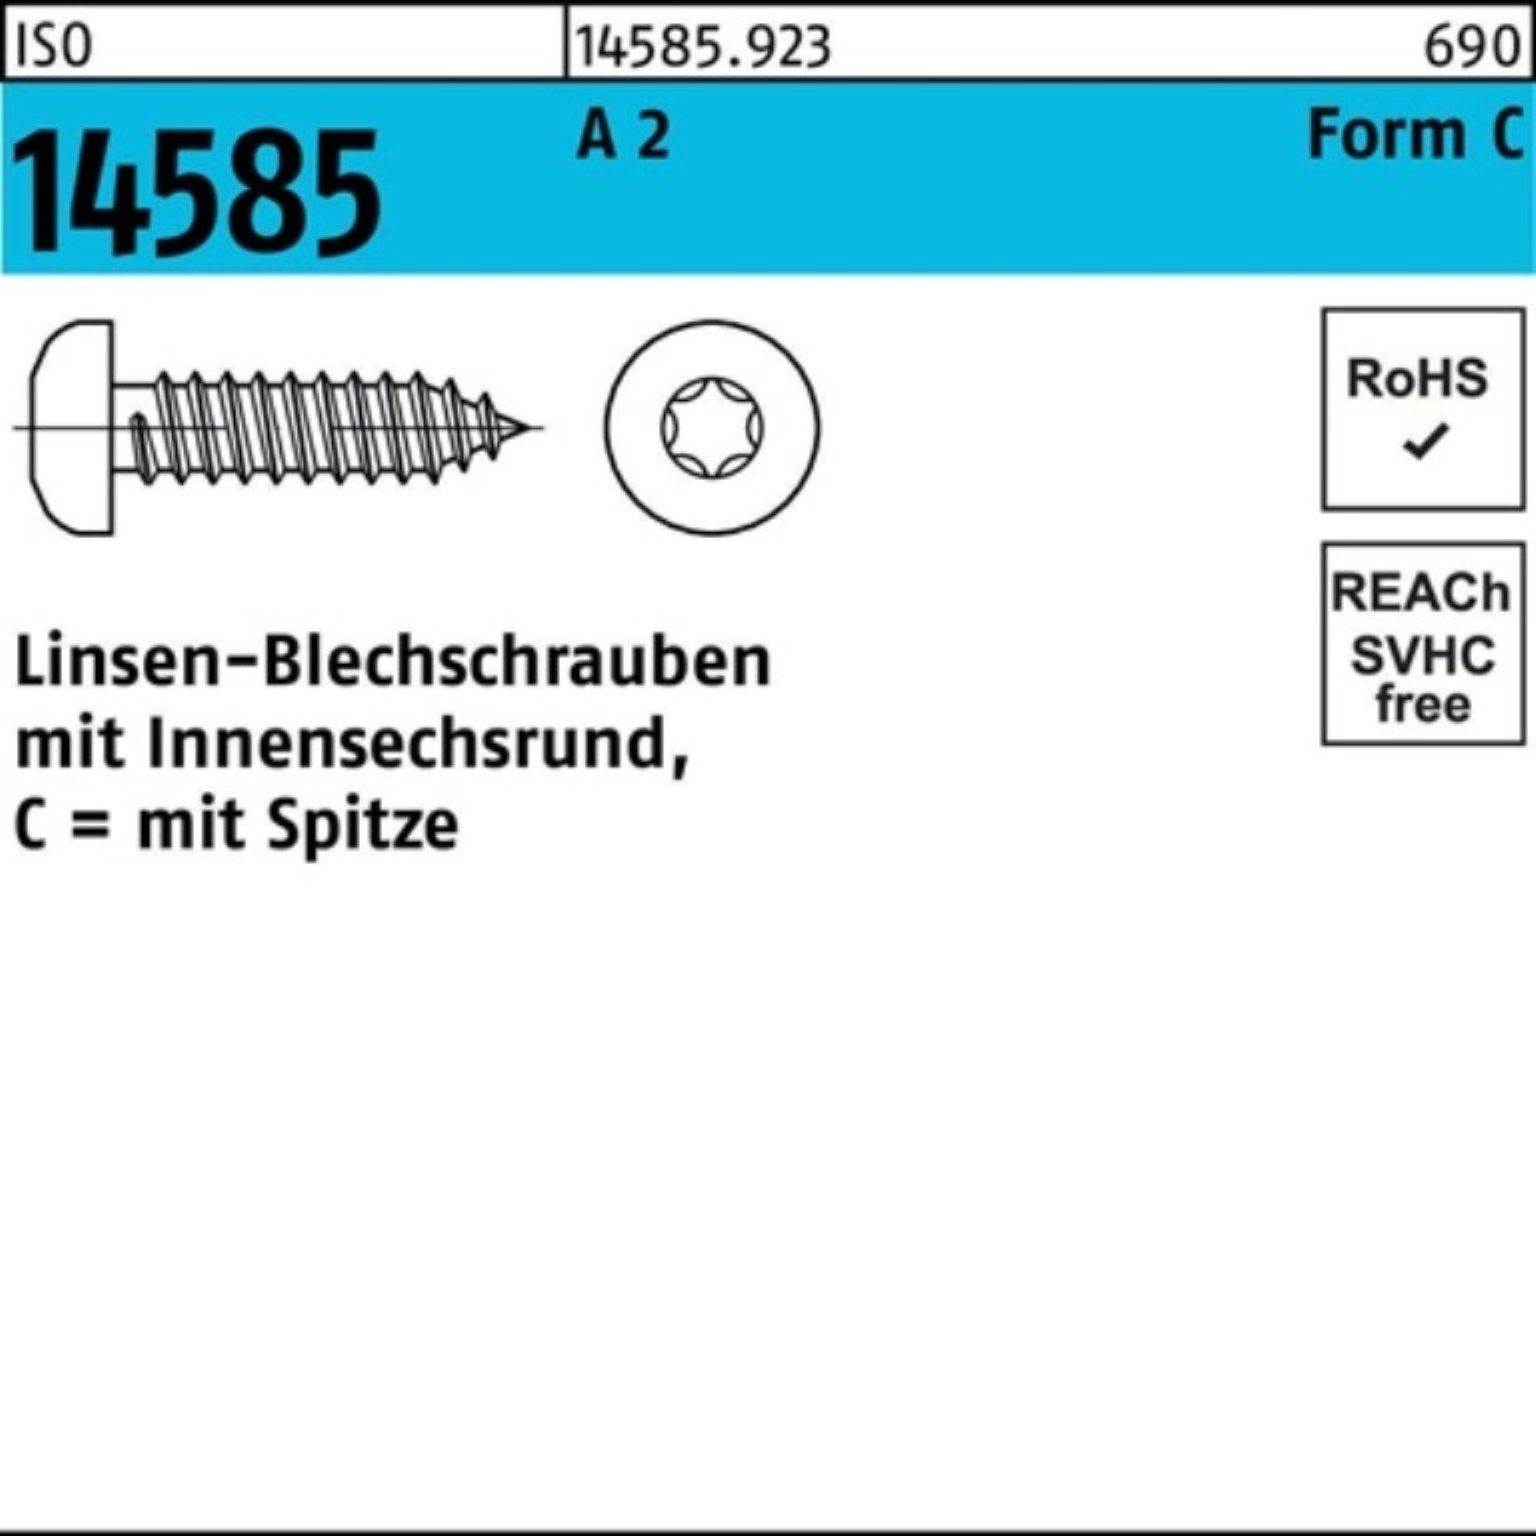 -C 1000er 2 ISO ISR Blechschraube 19 T10 1000 A 2,9x Linsenblechschraube Reyher Pack 14585